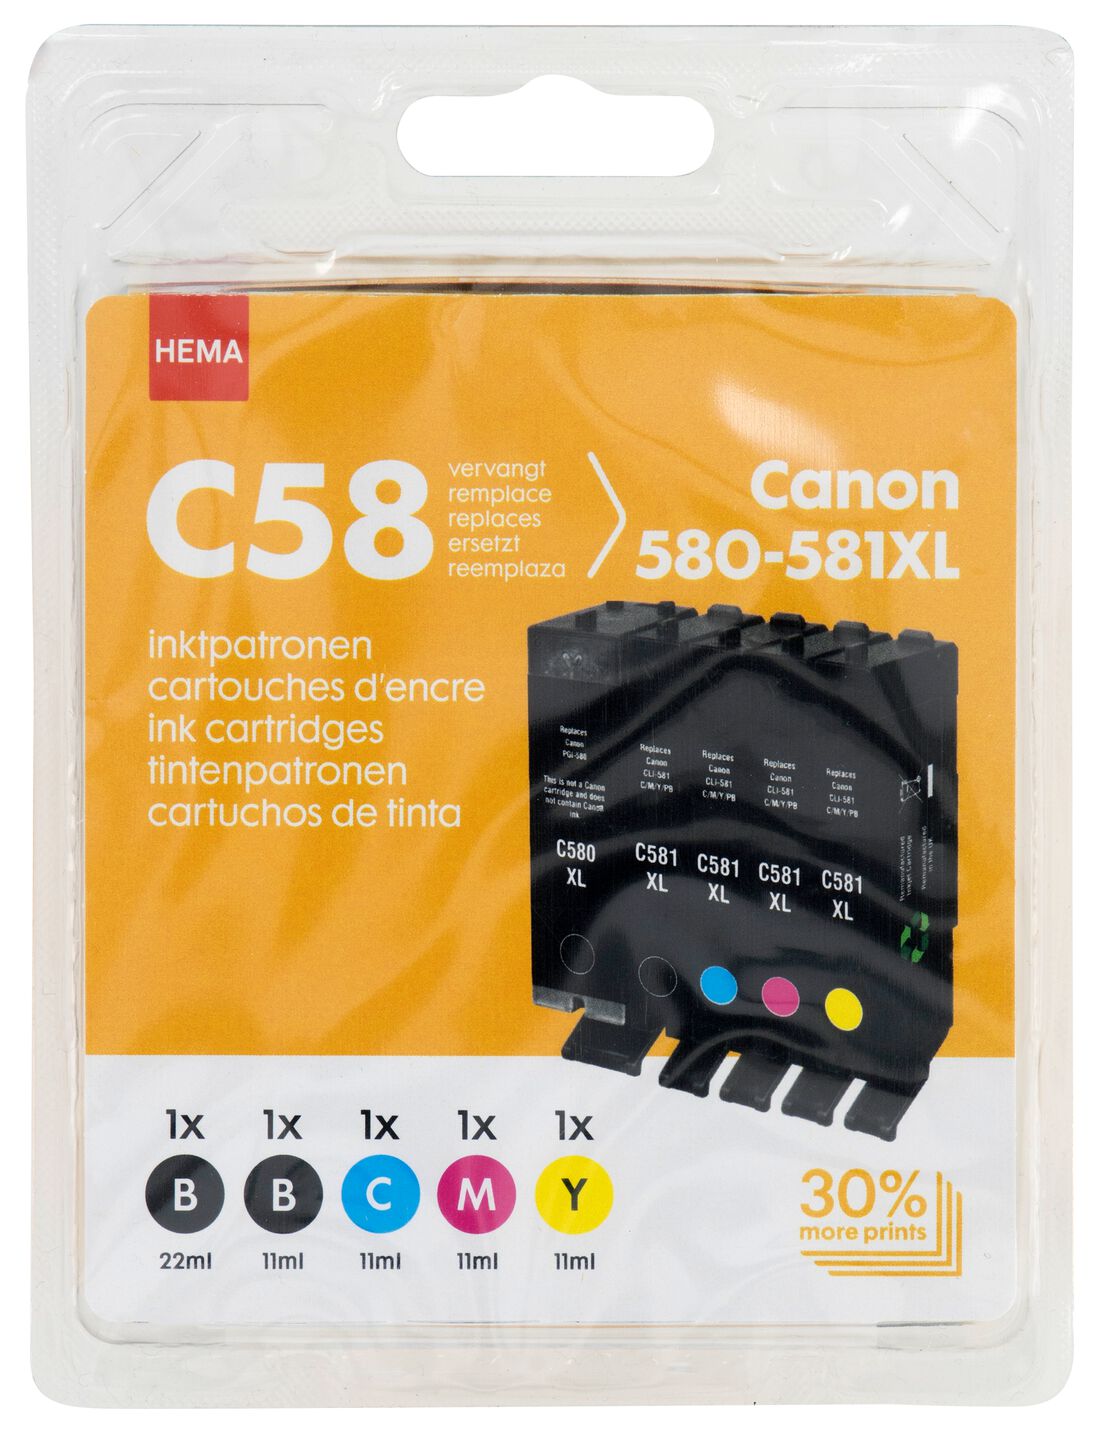 HEMA HEMA Cartridge C58 Voor De Canon 580-581XL Zwart/kleur